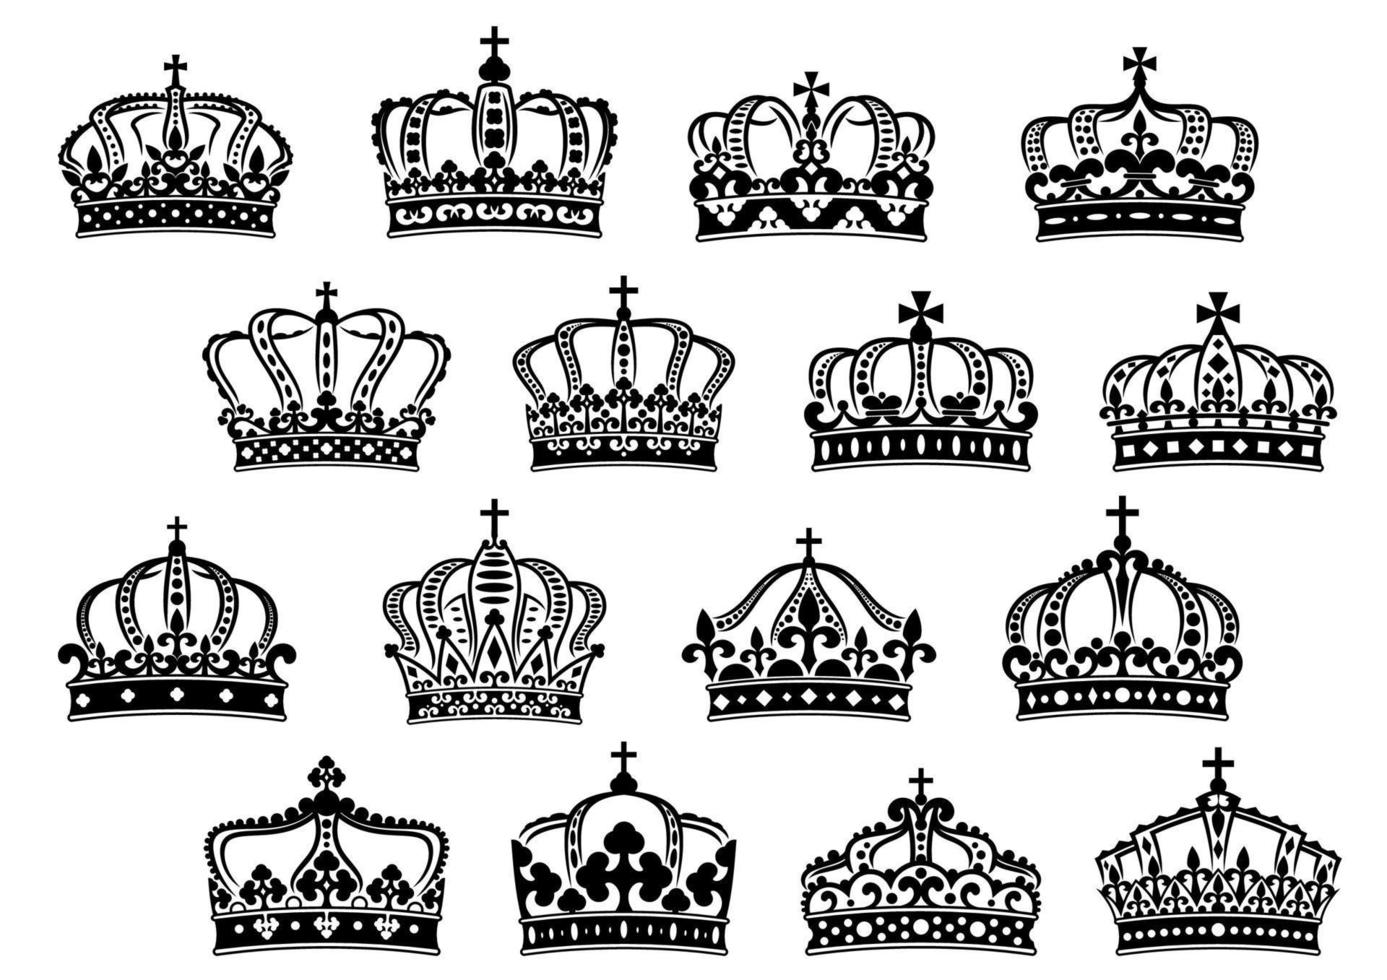 ensemble de couronnes royales ou impériales vecteur